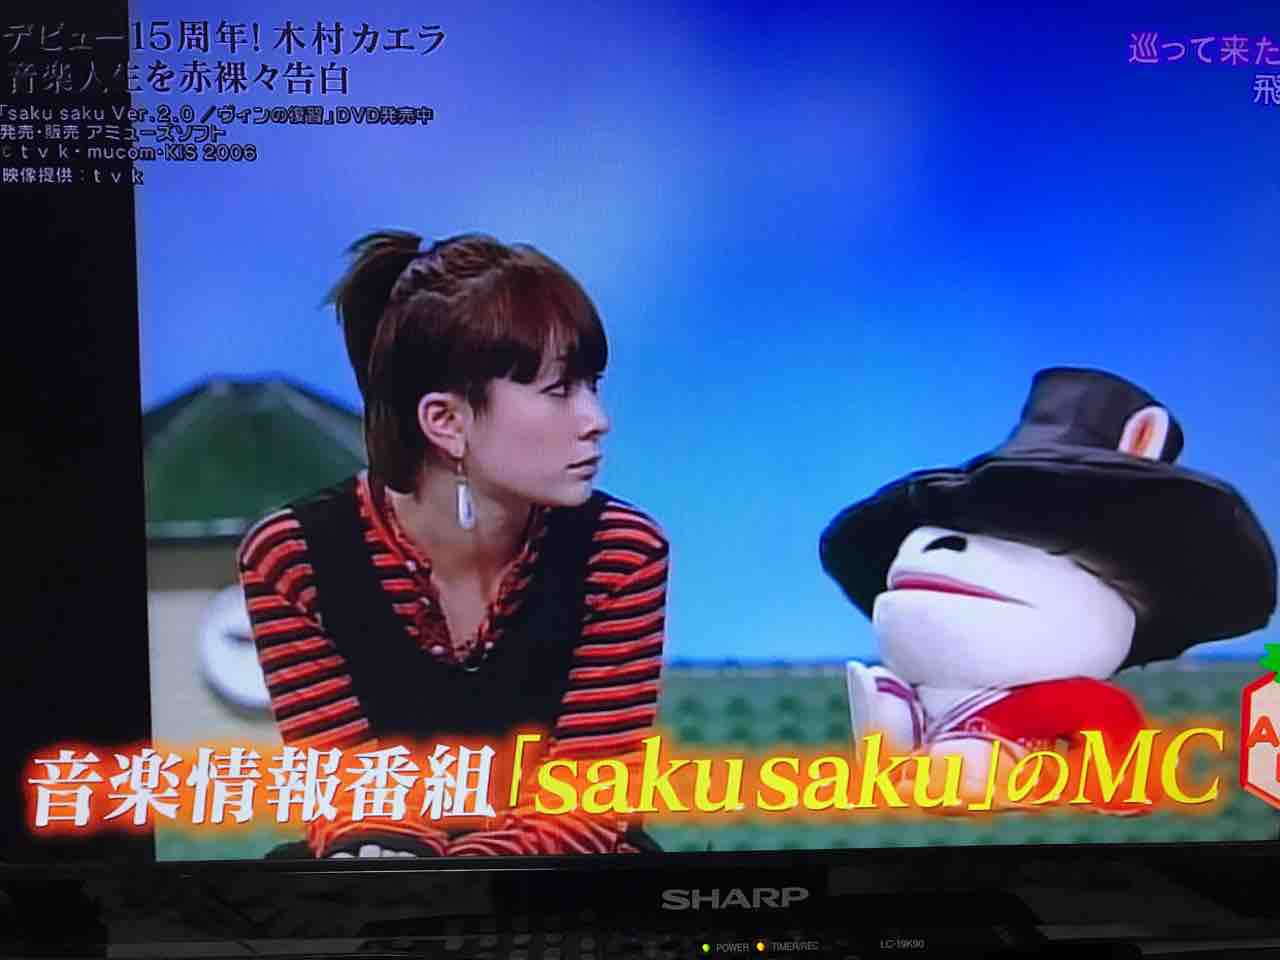 saku saku Ver2.0 DVD 特典付き 木村カエラ tvk サクサク